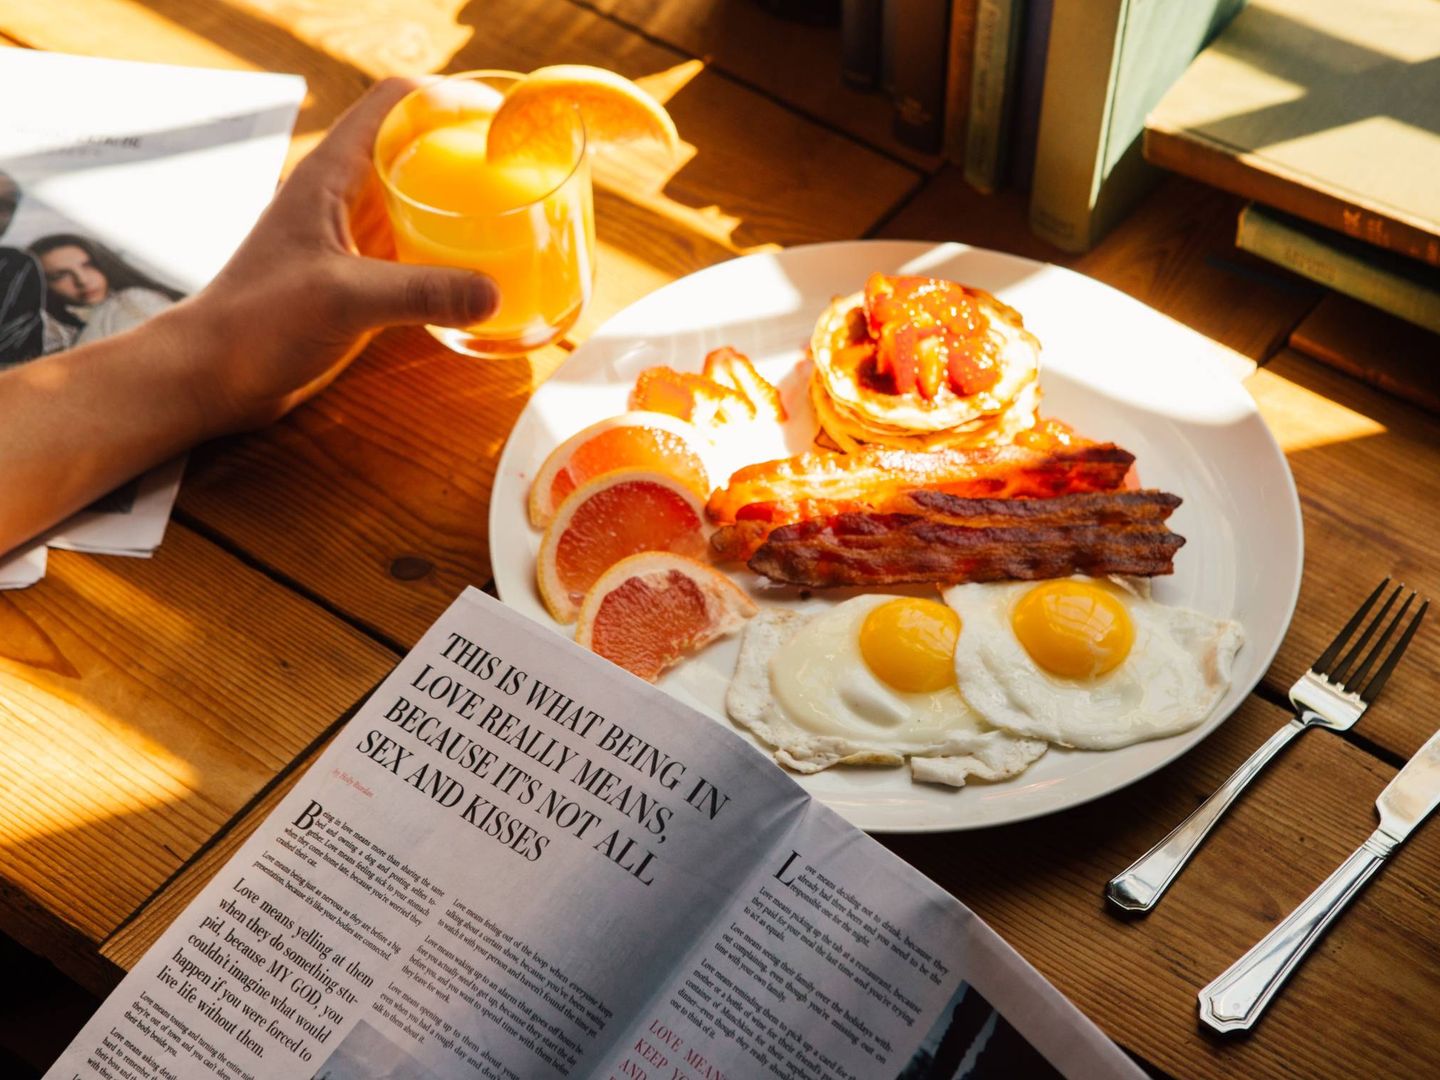 Errores habituales en el desayuno. (Thought Catalog para Unsplash)